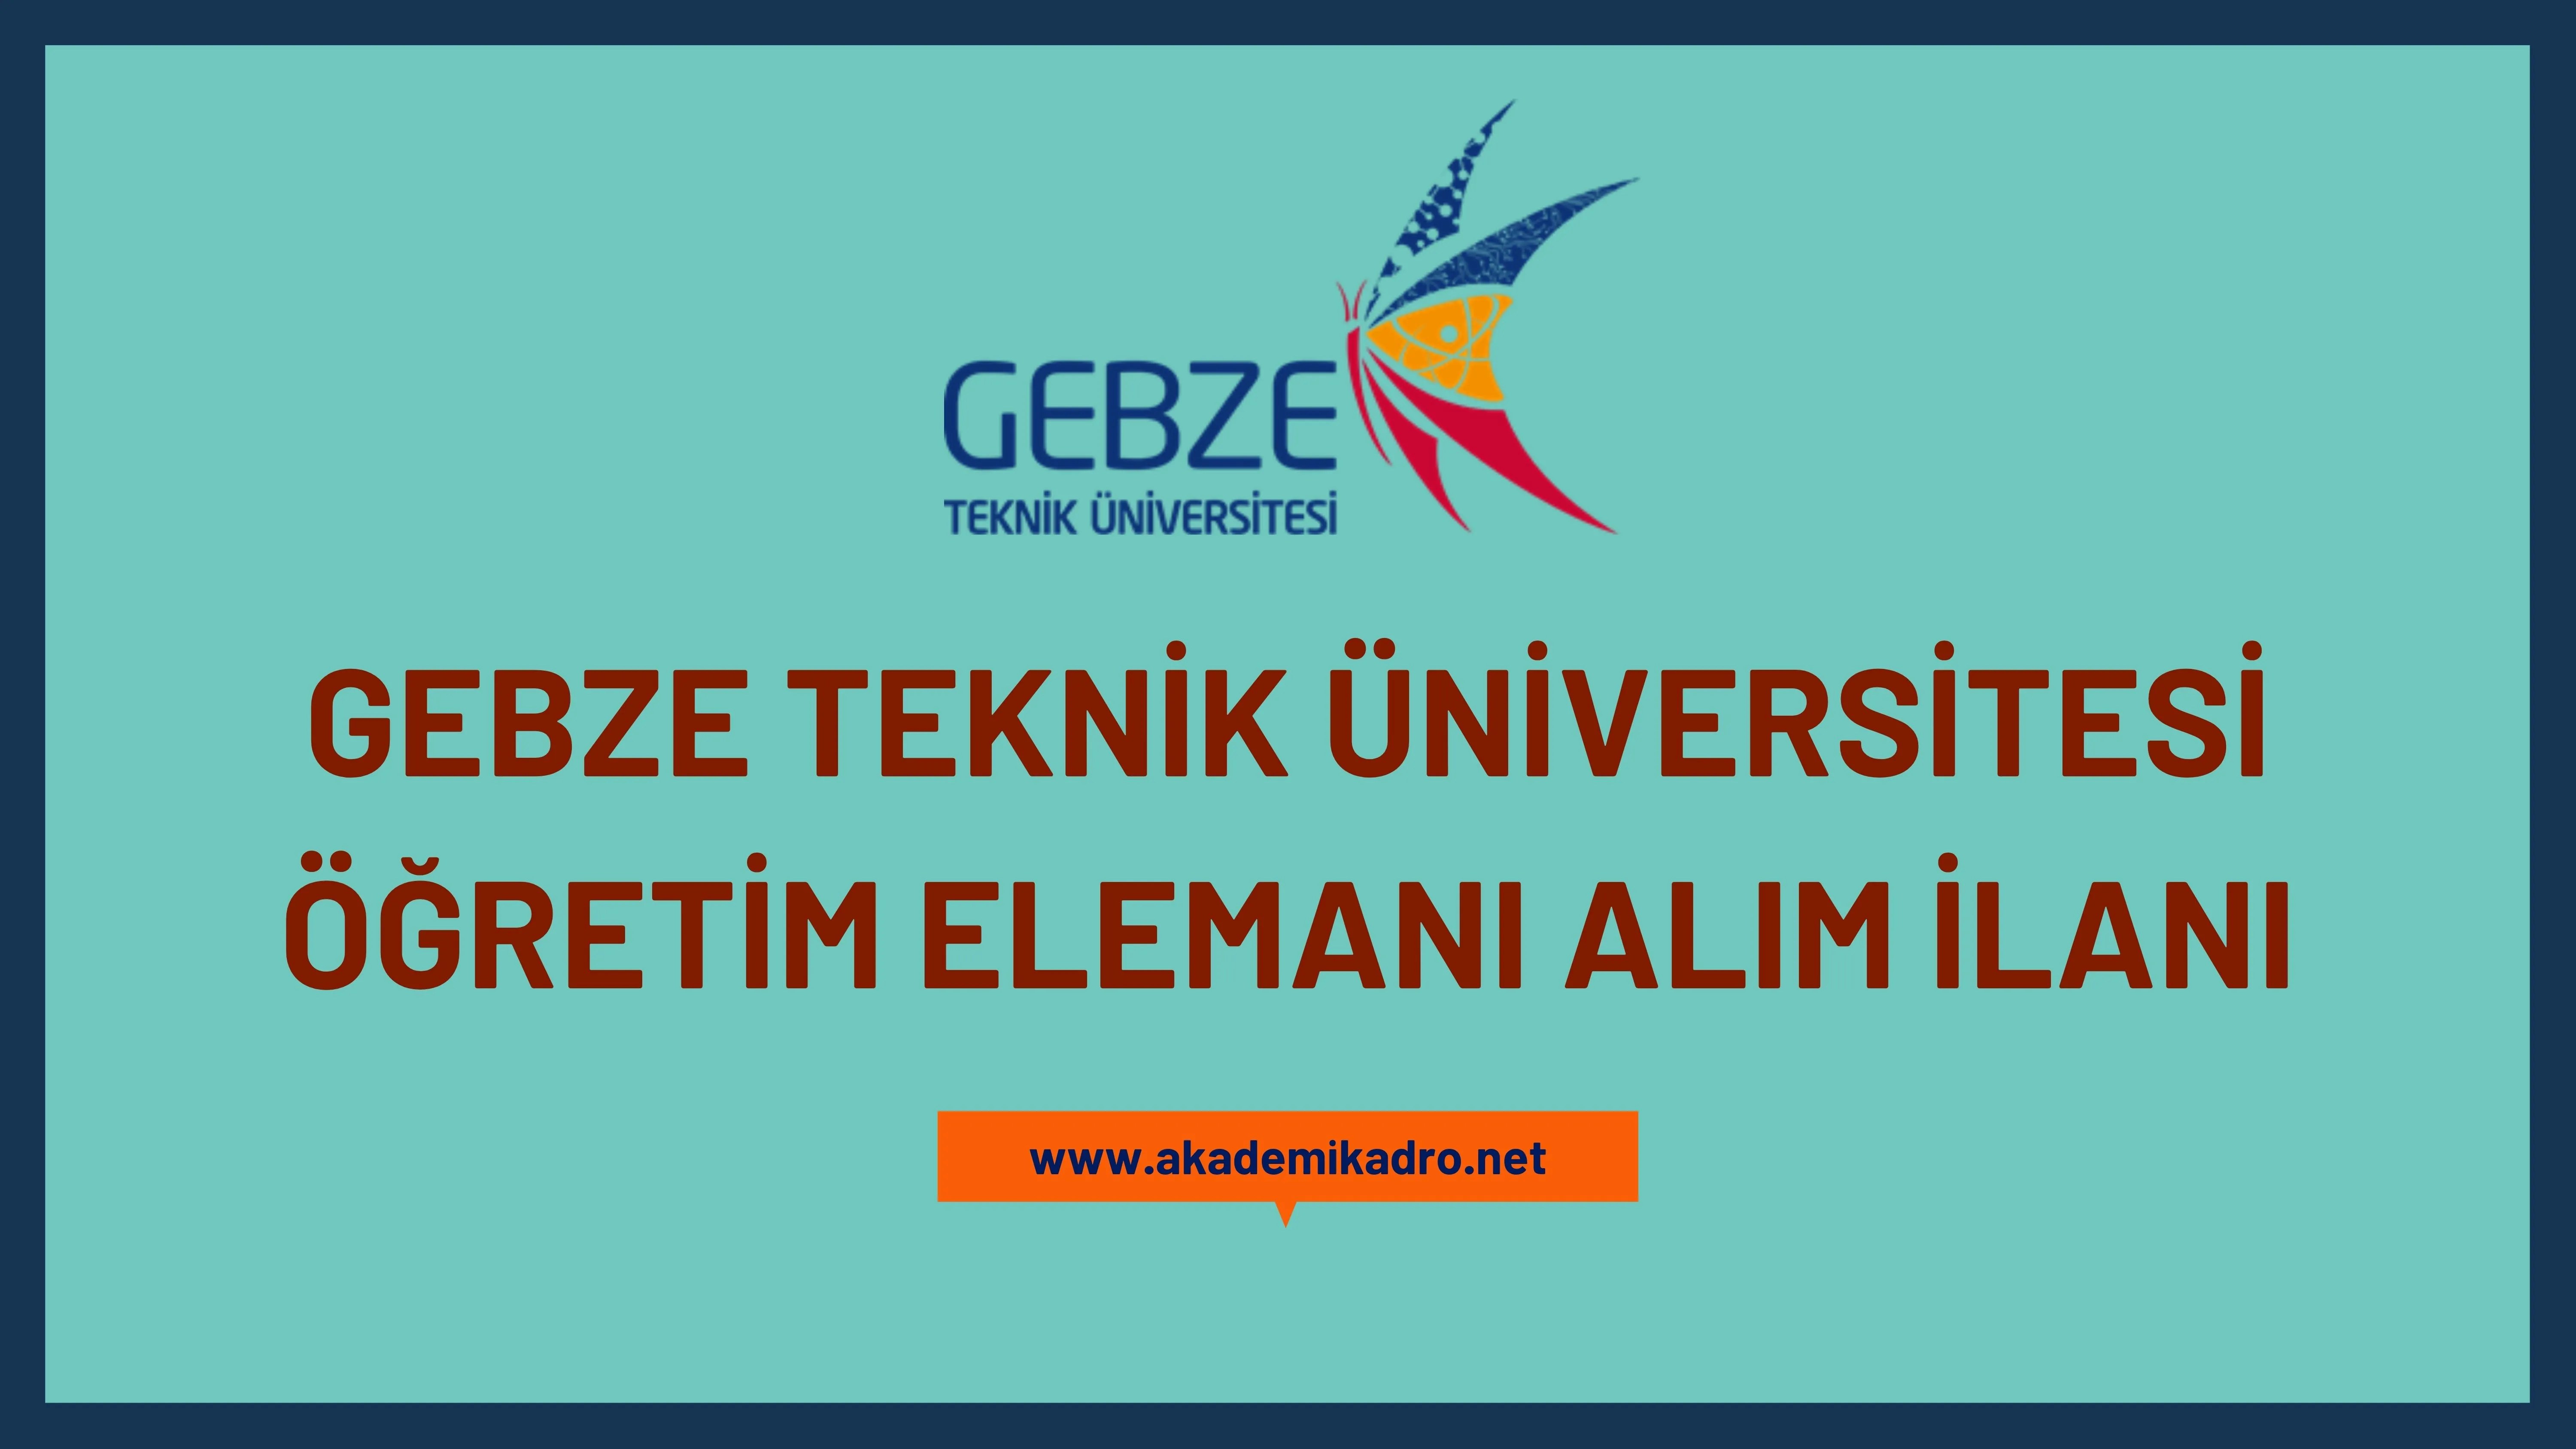 Gebze Teknik Üniversitesi 2 Öğretim görevlisi, 4 Araştırma görevlisi ve 6 Öğretim üyesi alacak. Son başvuru tarihi 9 Ocak 2023.